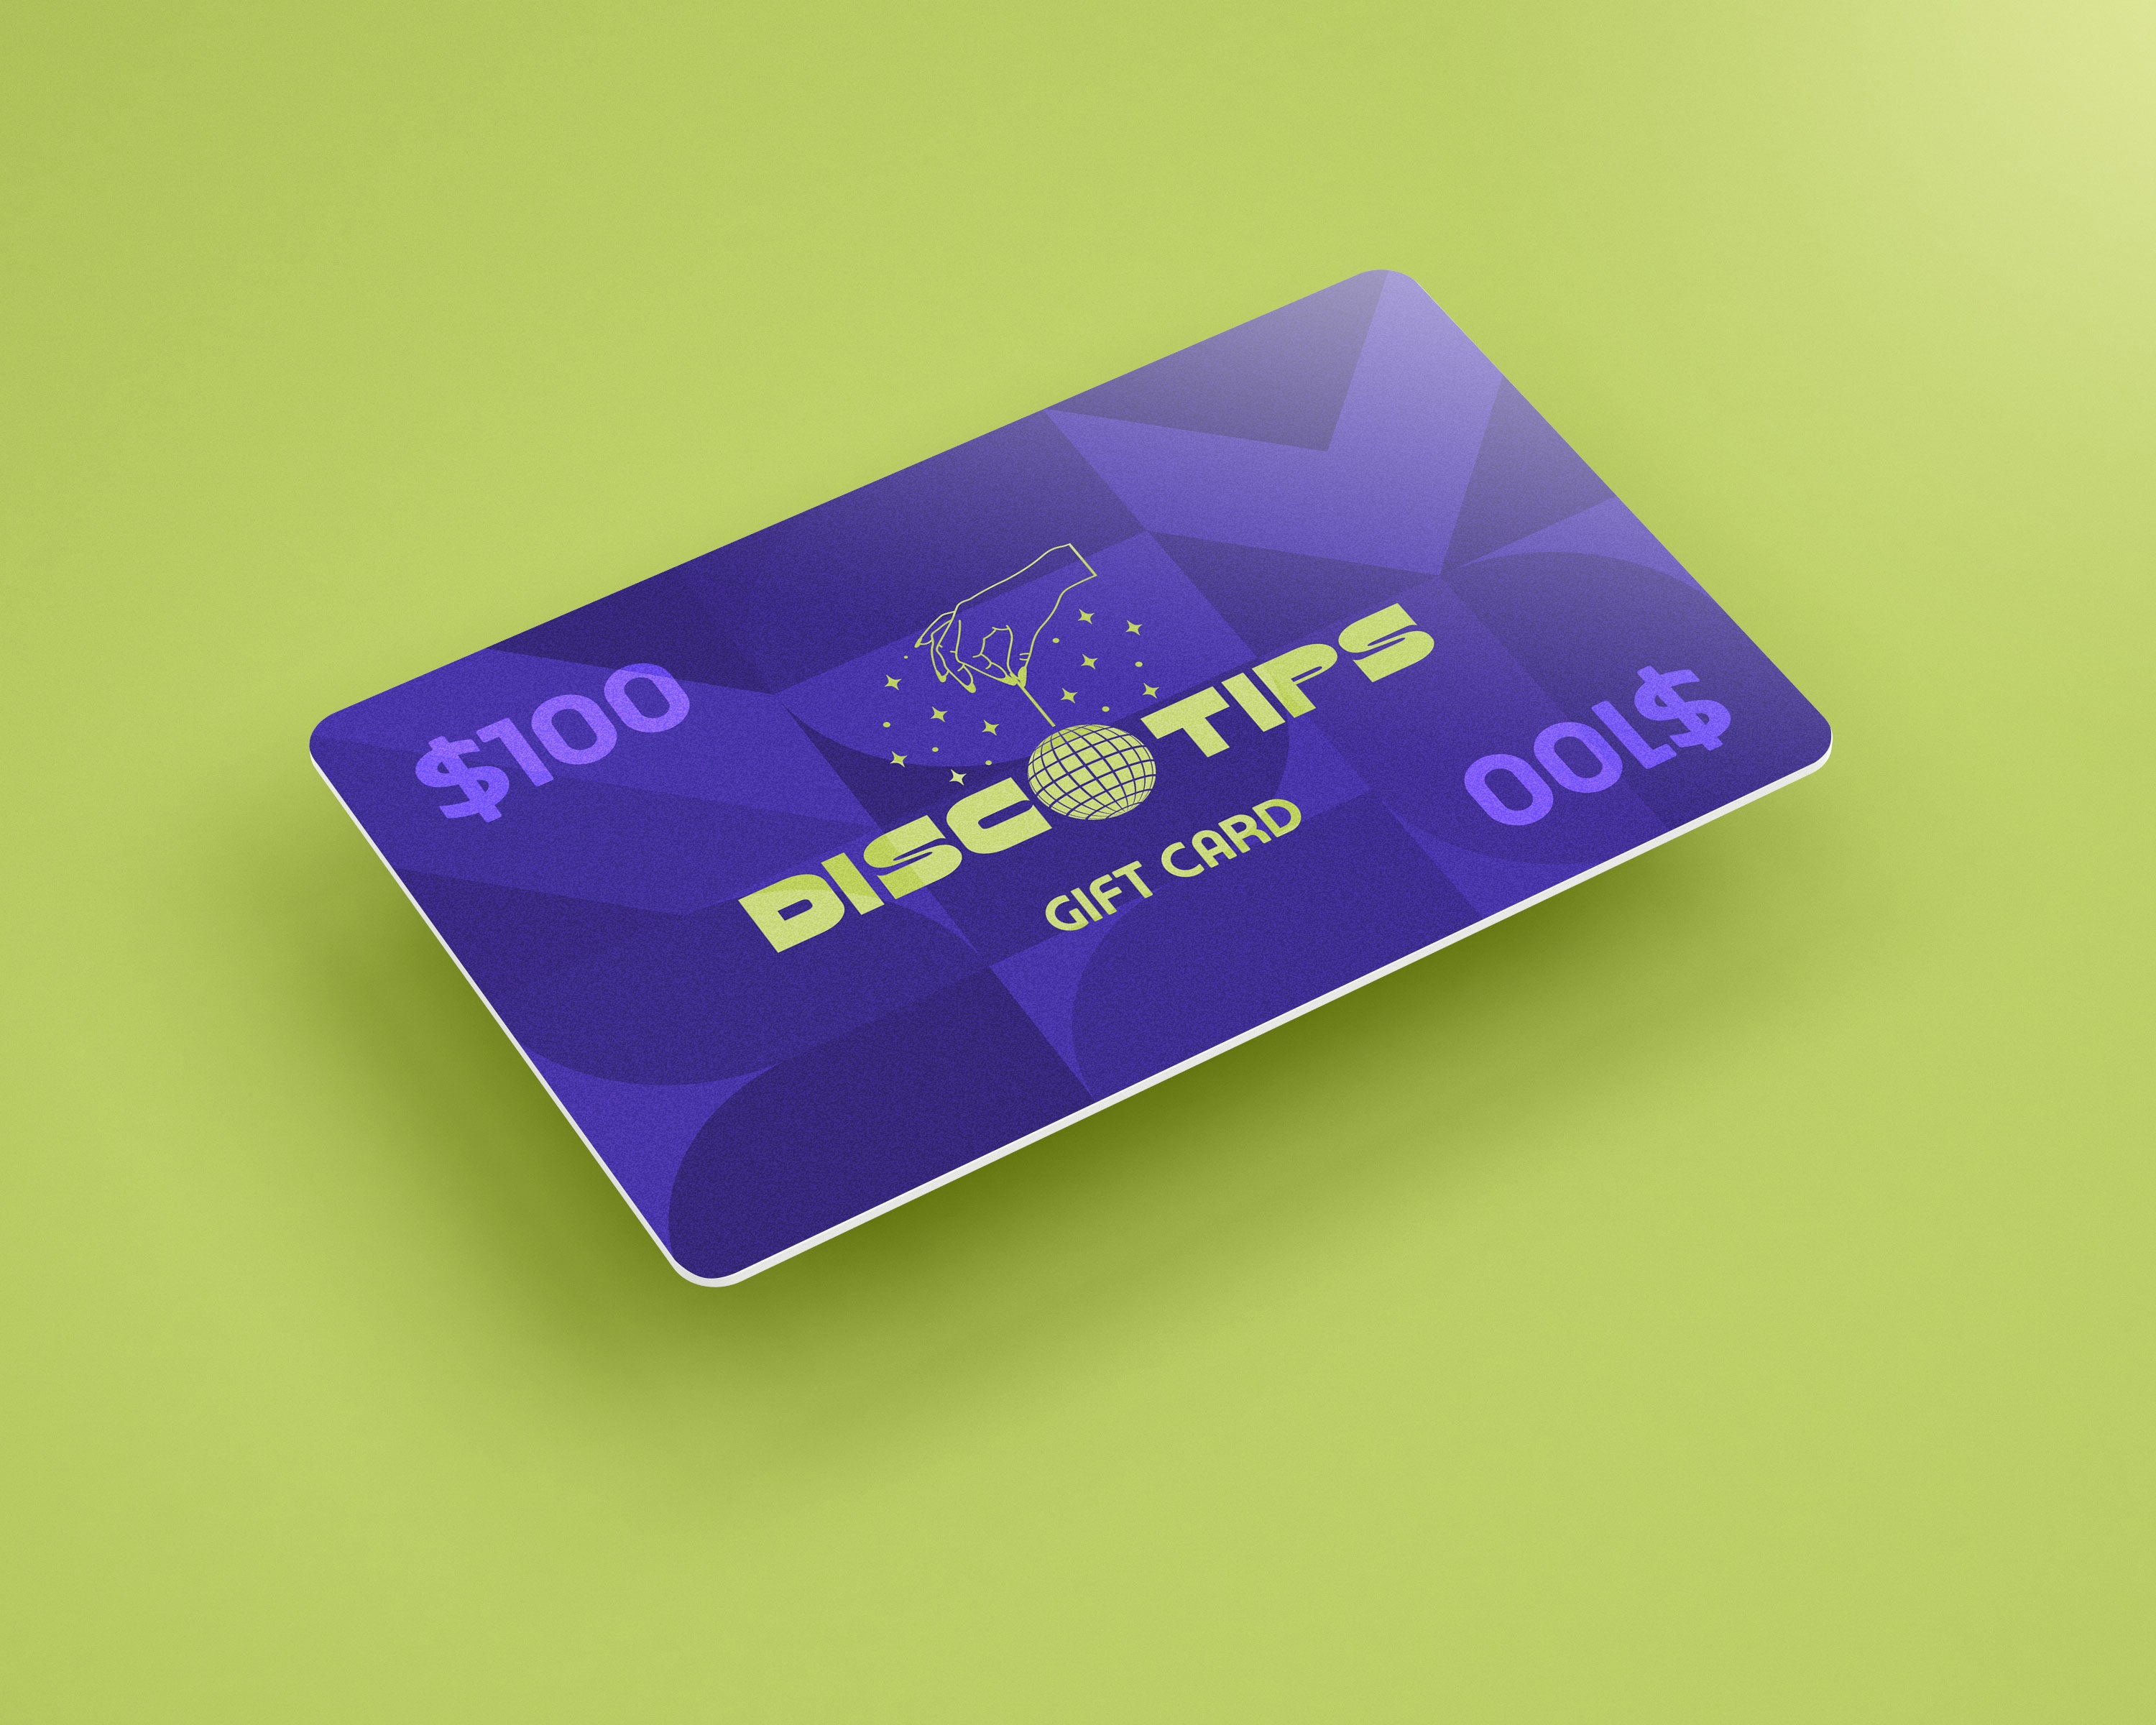 Disco Tips Gift Card